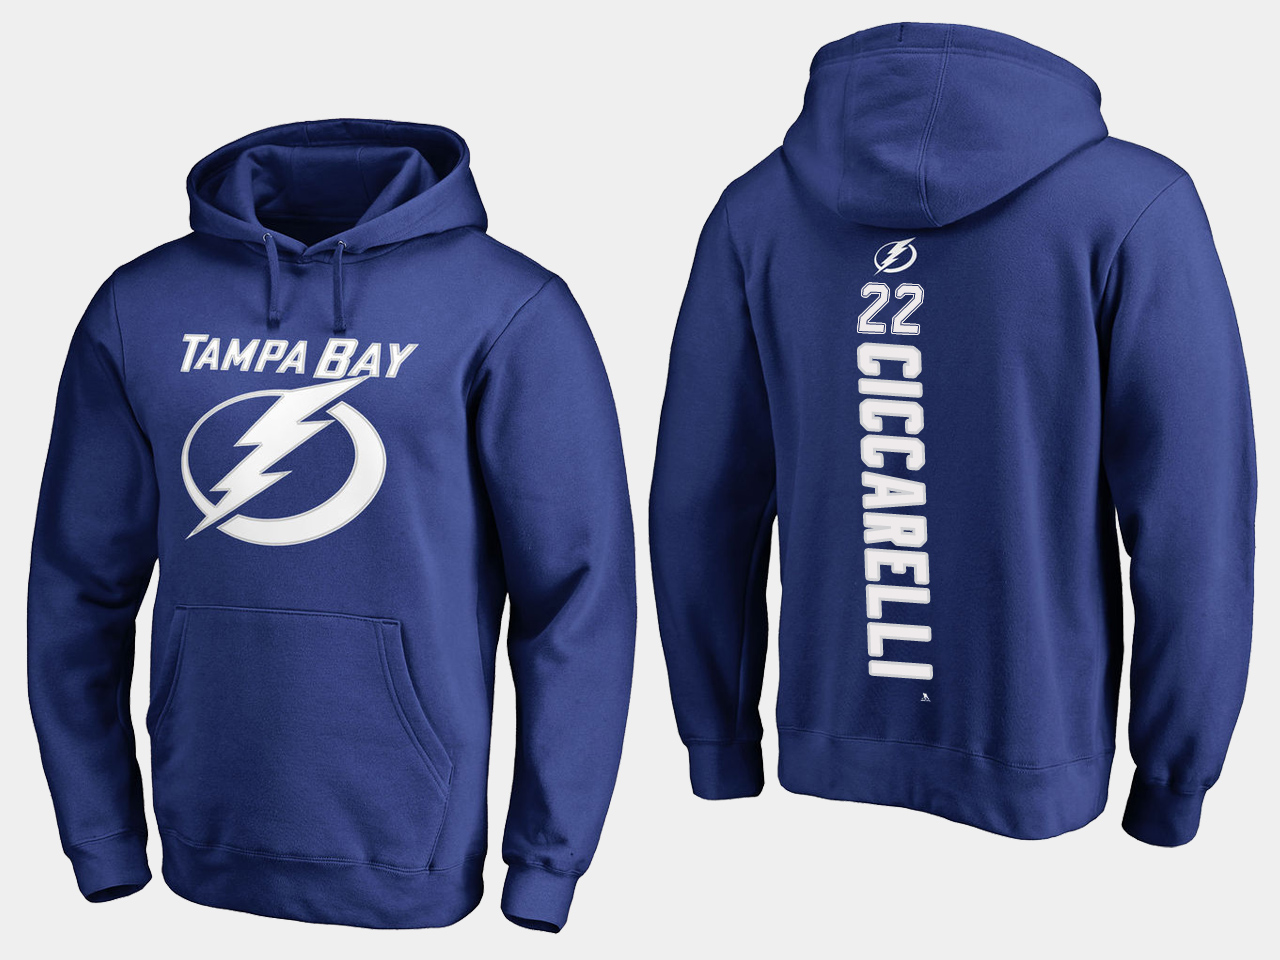 NHL Men adidas Tampa Bay Lightning #22 Ciccarelli blue hoodie->tampa bay lightning->NHL Jersey